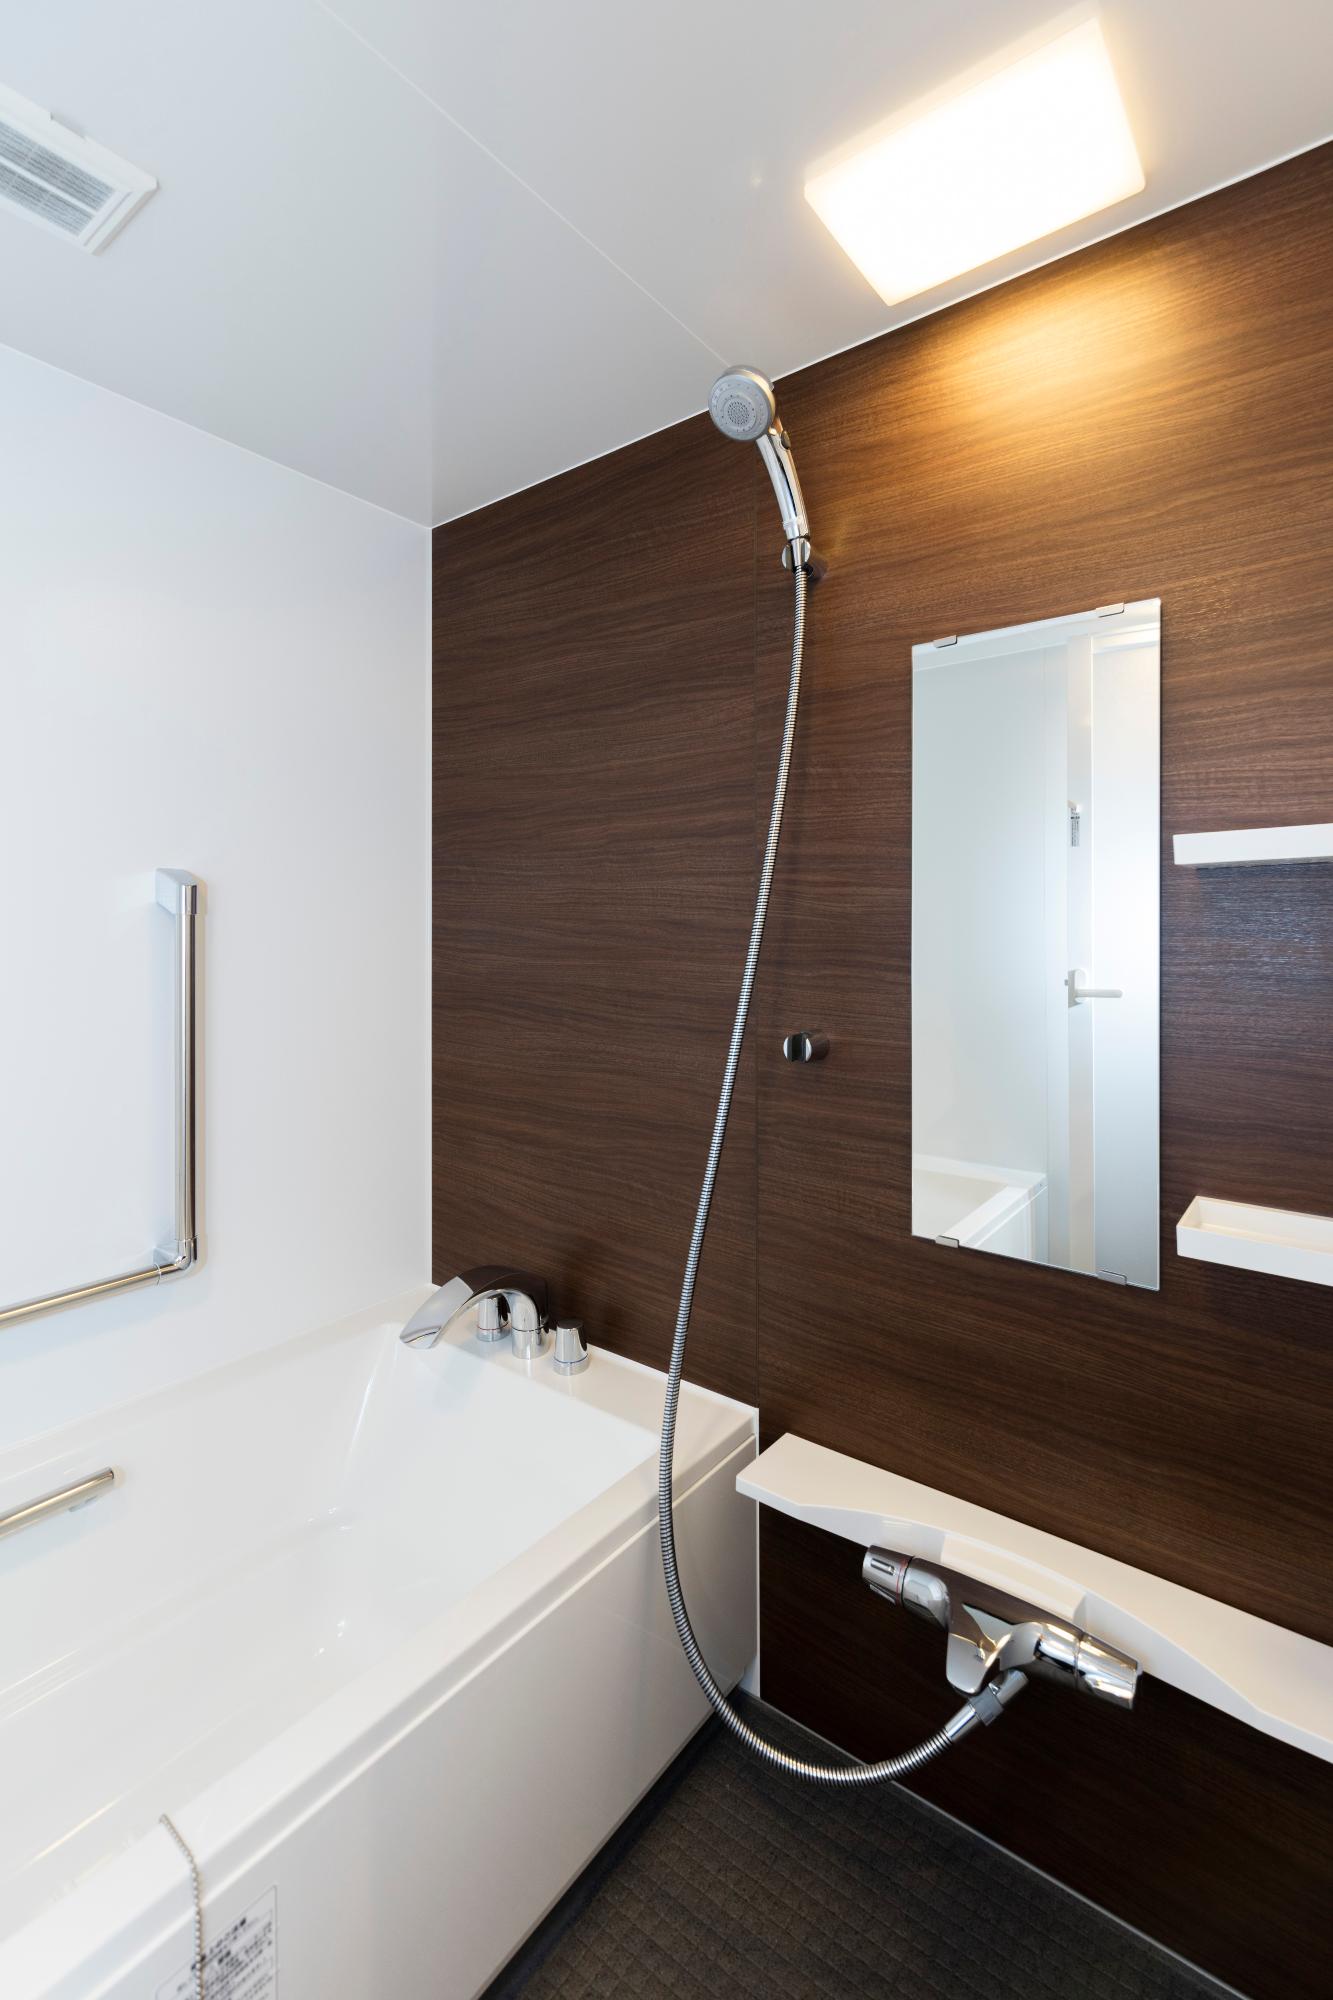 木目調パネルの濃茶色の壁と、清潔感のある白いバスタブが設置されている浴室内の写真